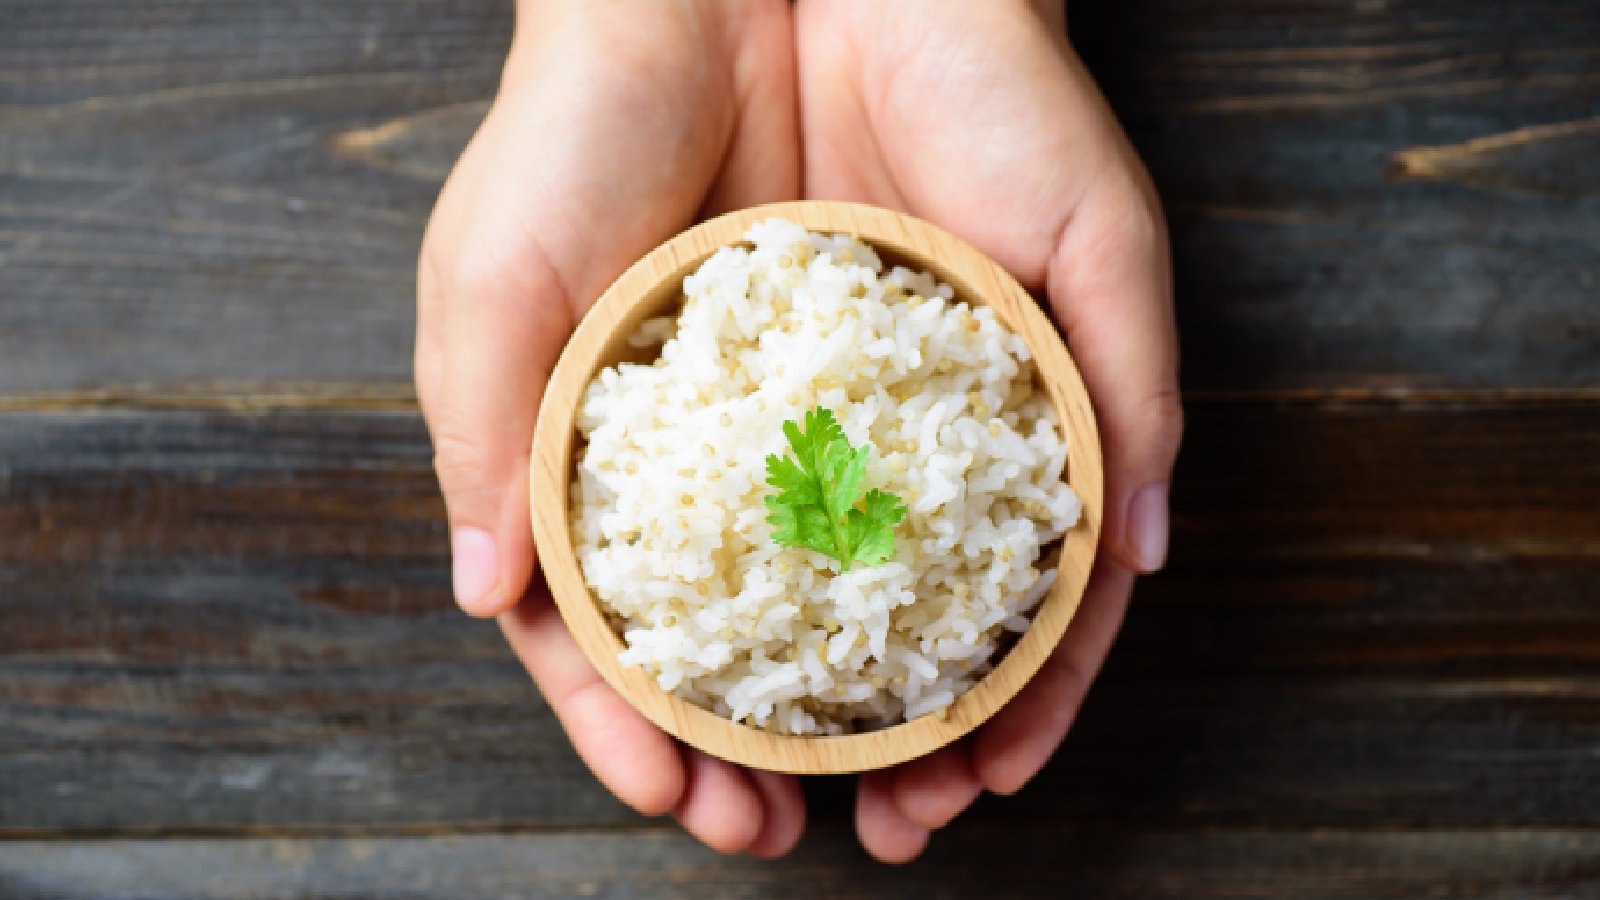 चावल खाकर भी वजन घटाया जा सकता है, एक्सपर्ट बता रहीं हैं कैसे